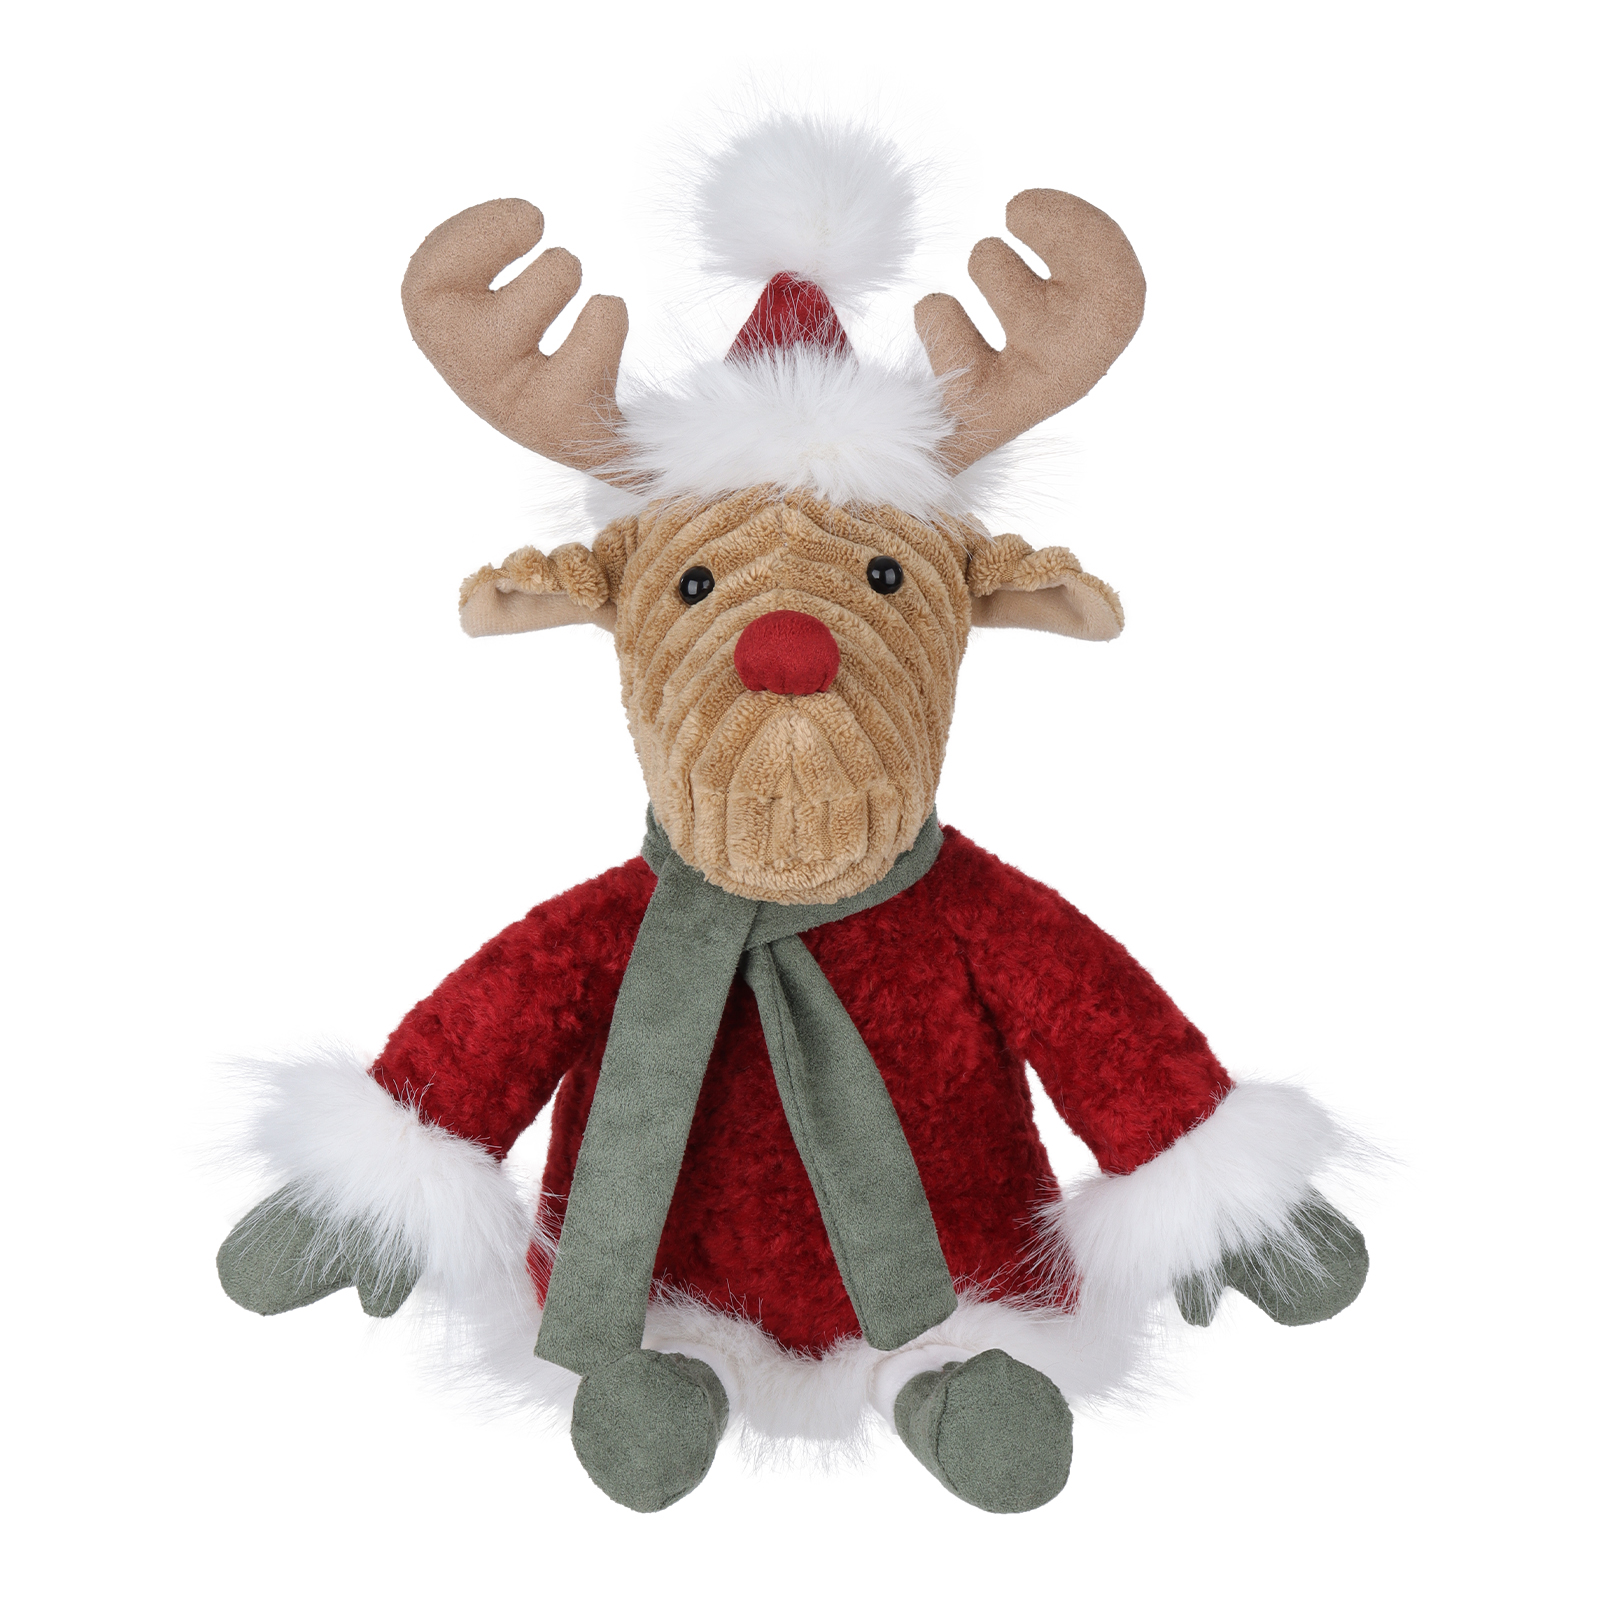 កូនចៀម Apricot រដូវរងា Christmas Elk Stuffed Animal Soft Plush Toys